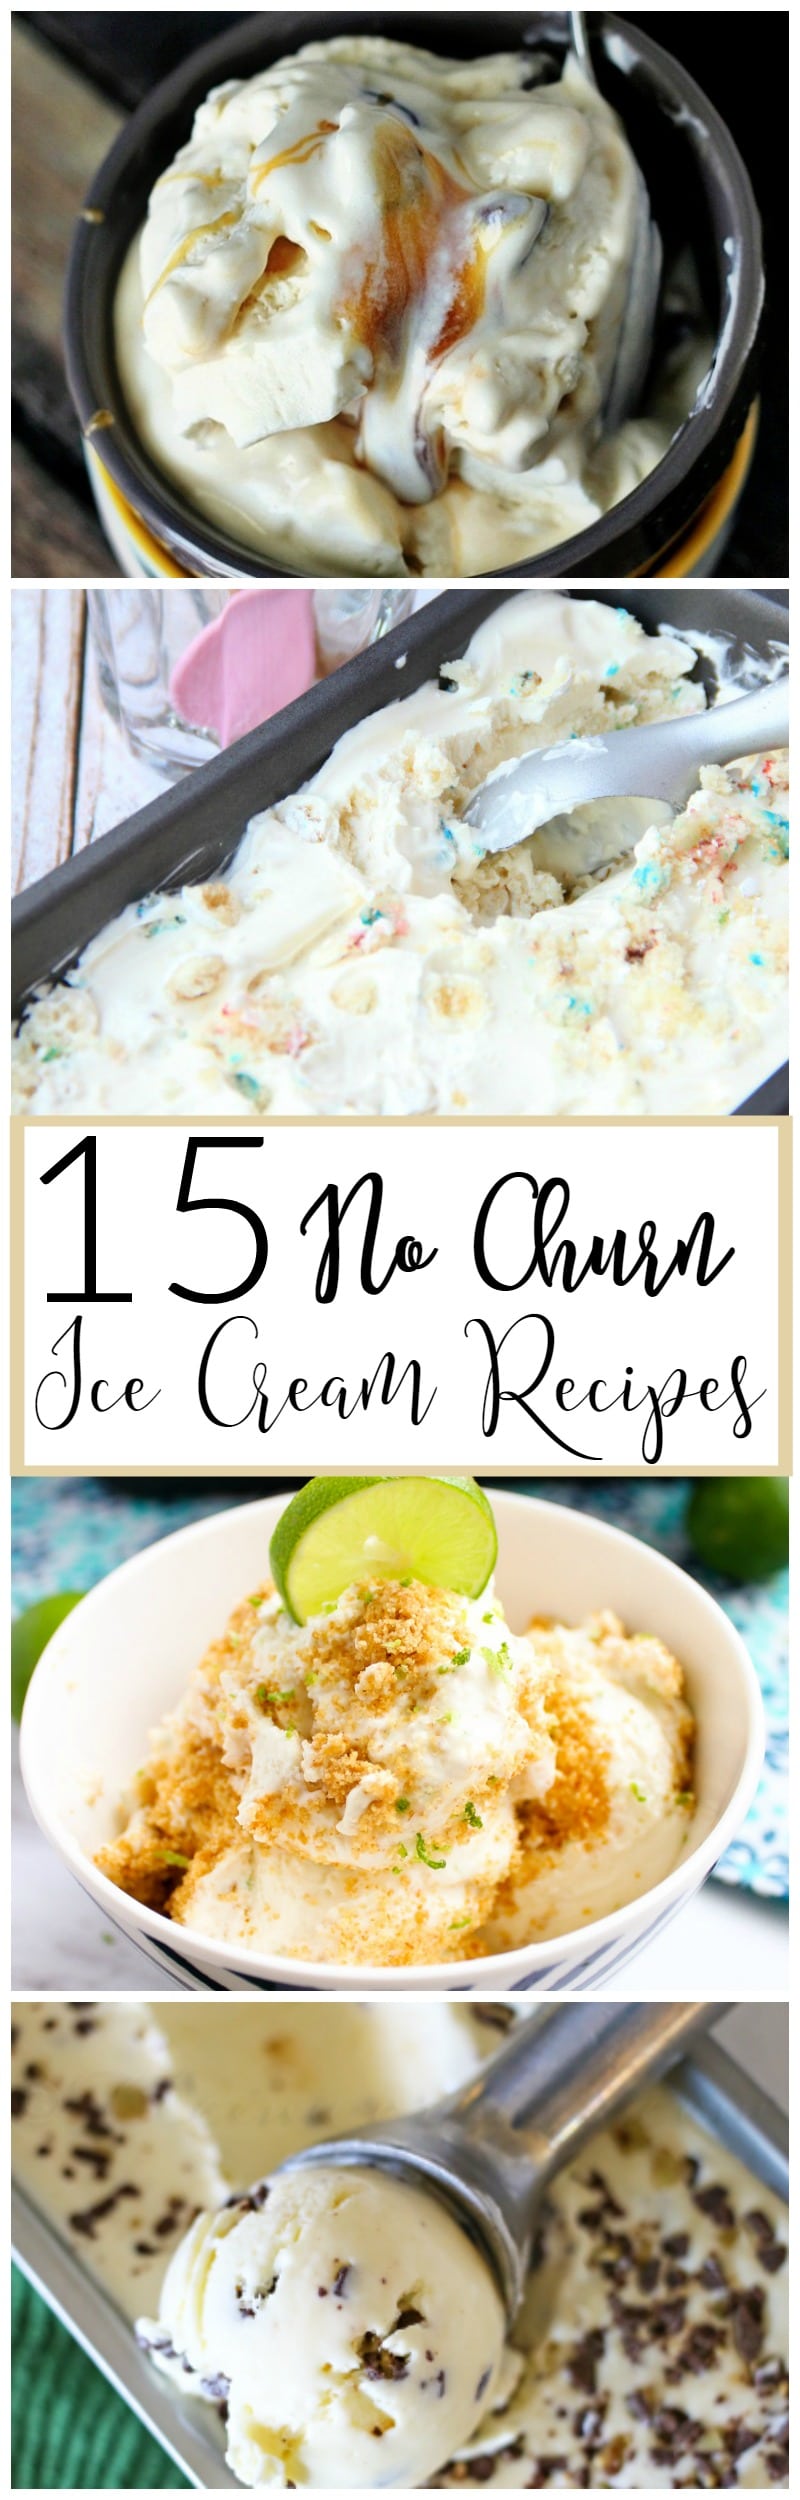 No Churn Ice Cream Recipes